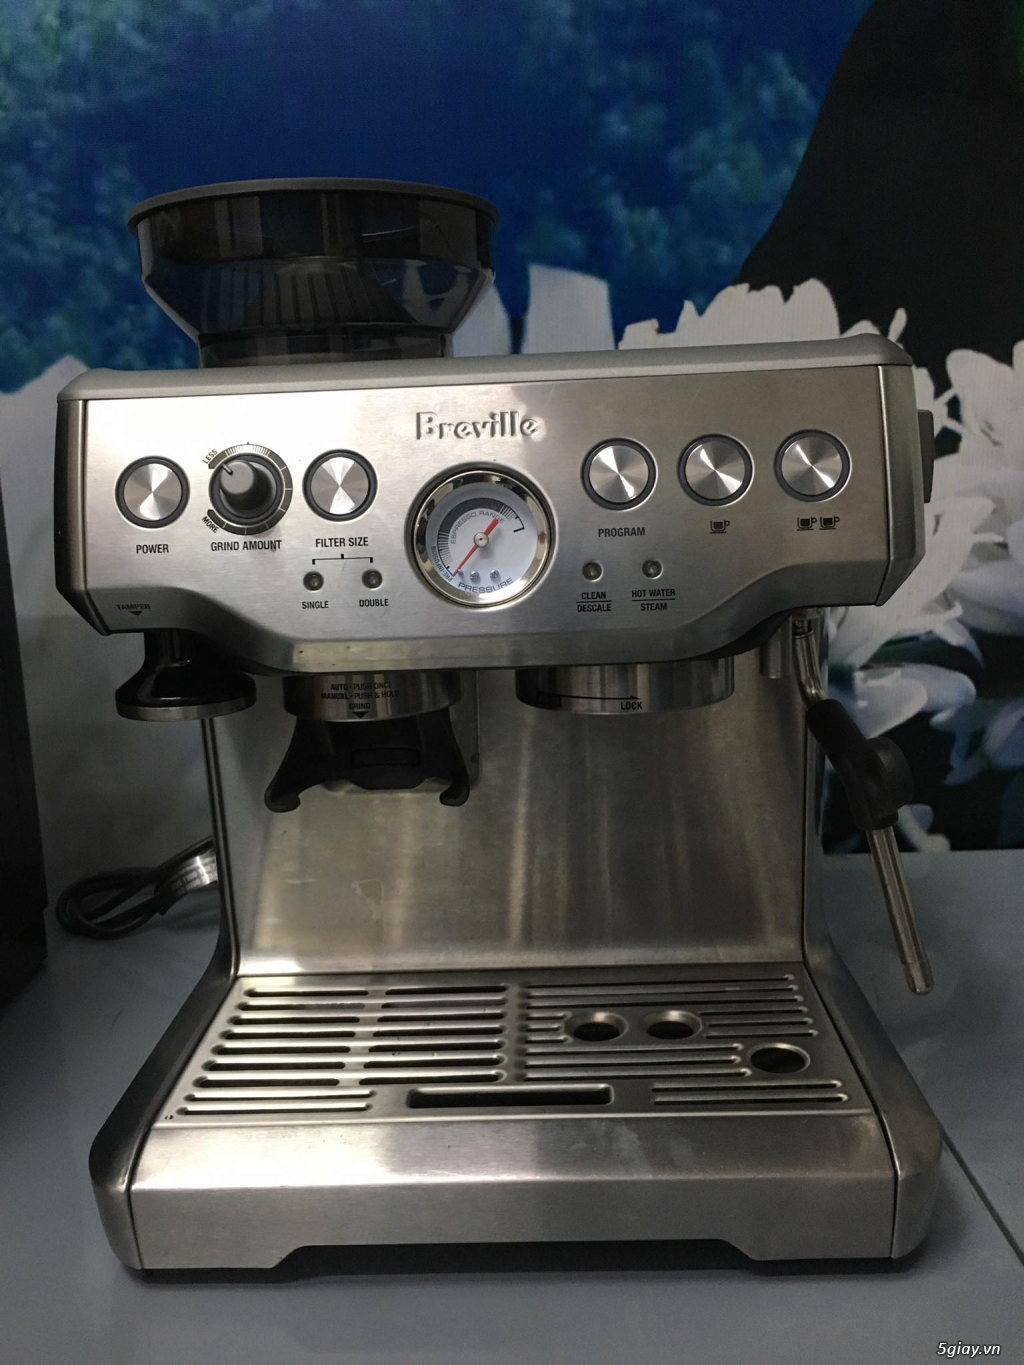 Thanh lý máy pha cà phê Breville 870XL